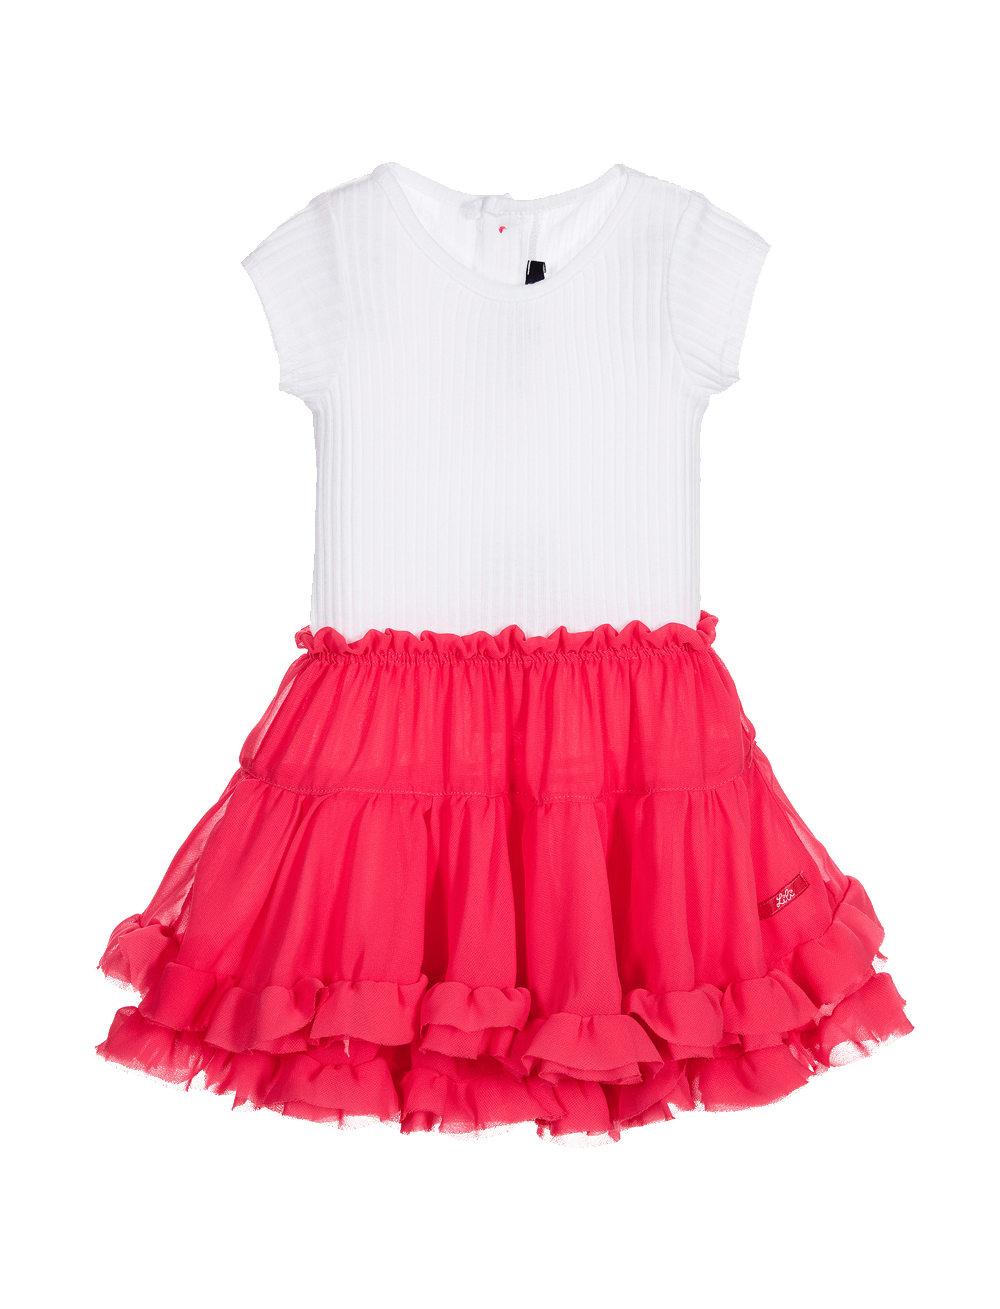 Lili Gaufrette Pale Pink & Grey Cotton & Chiffon Dress